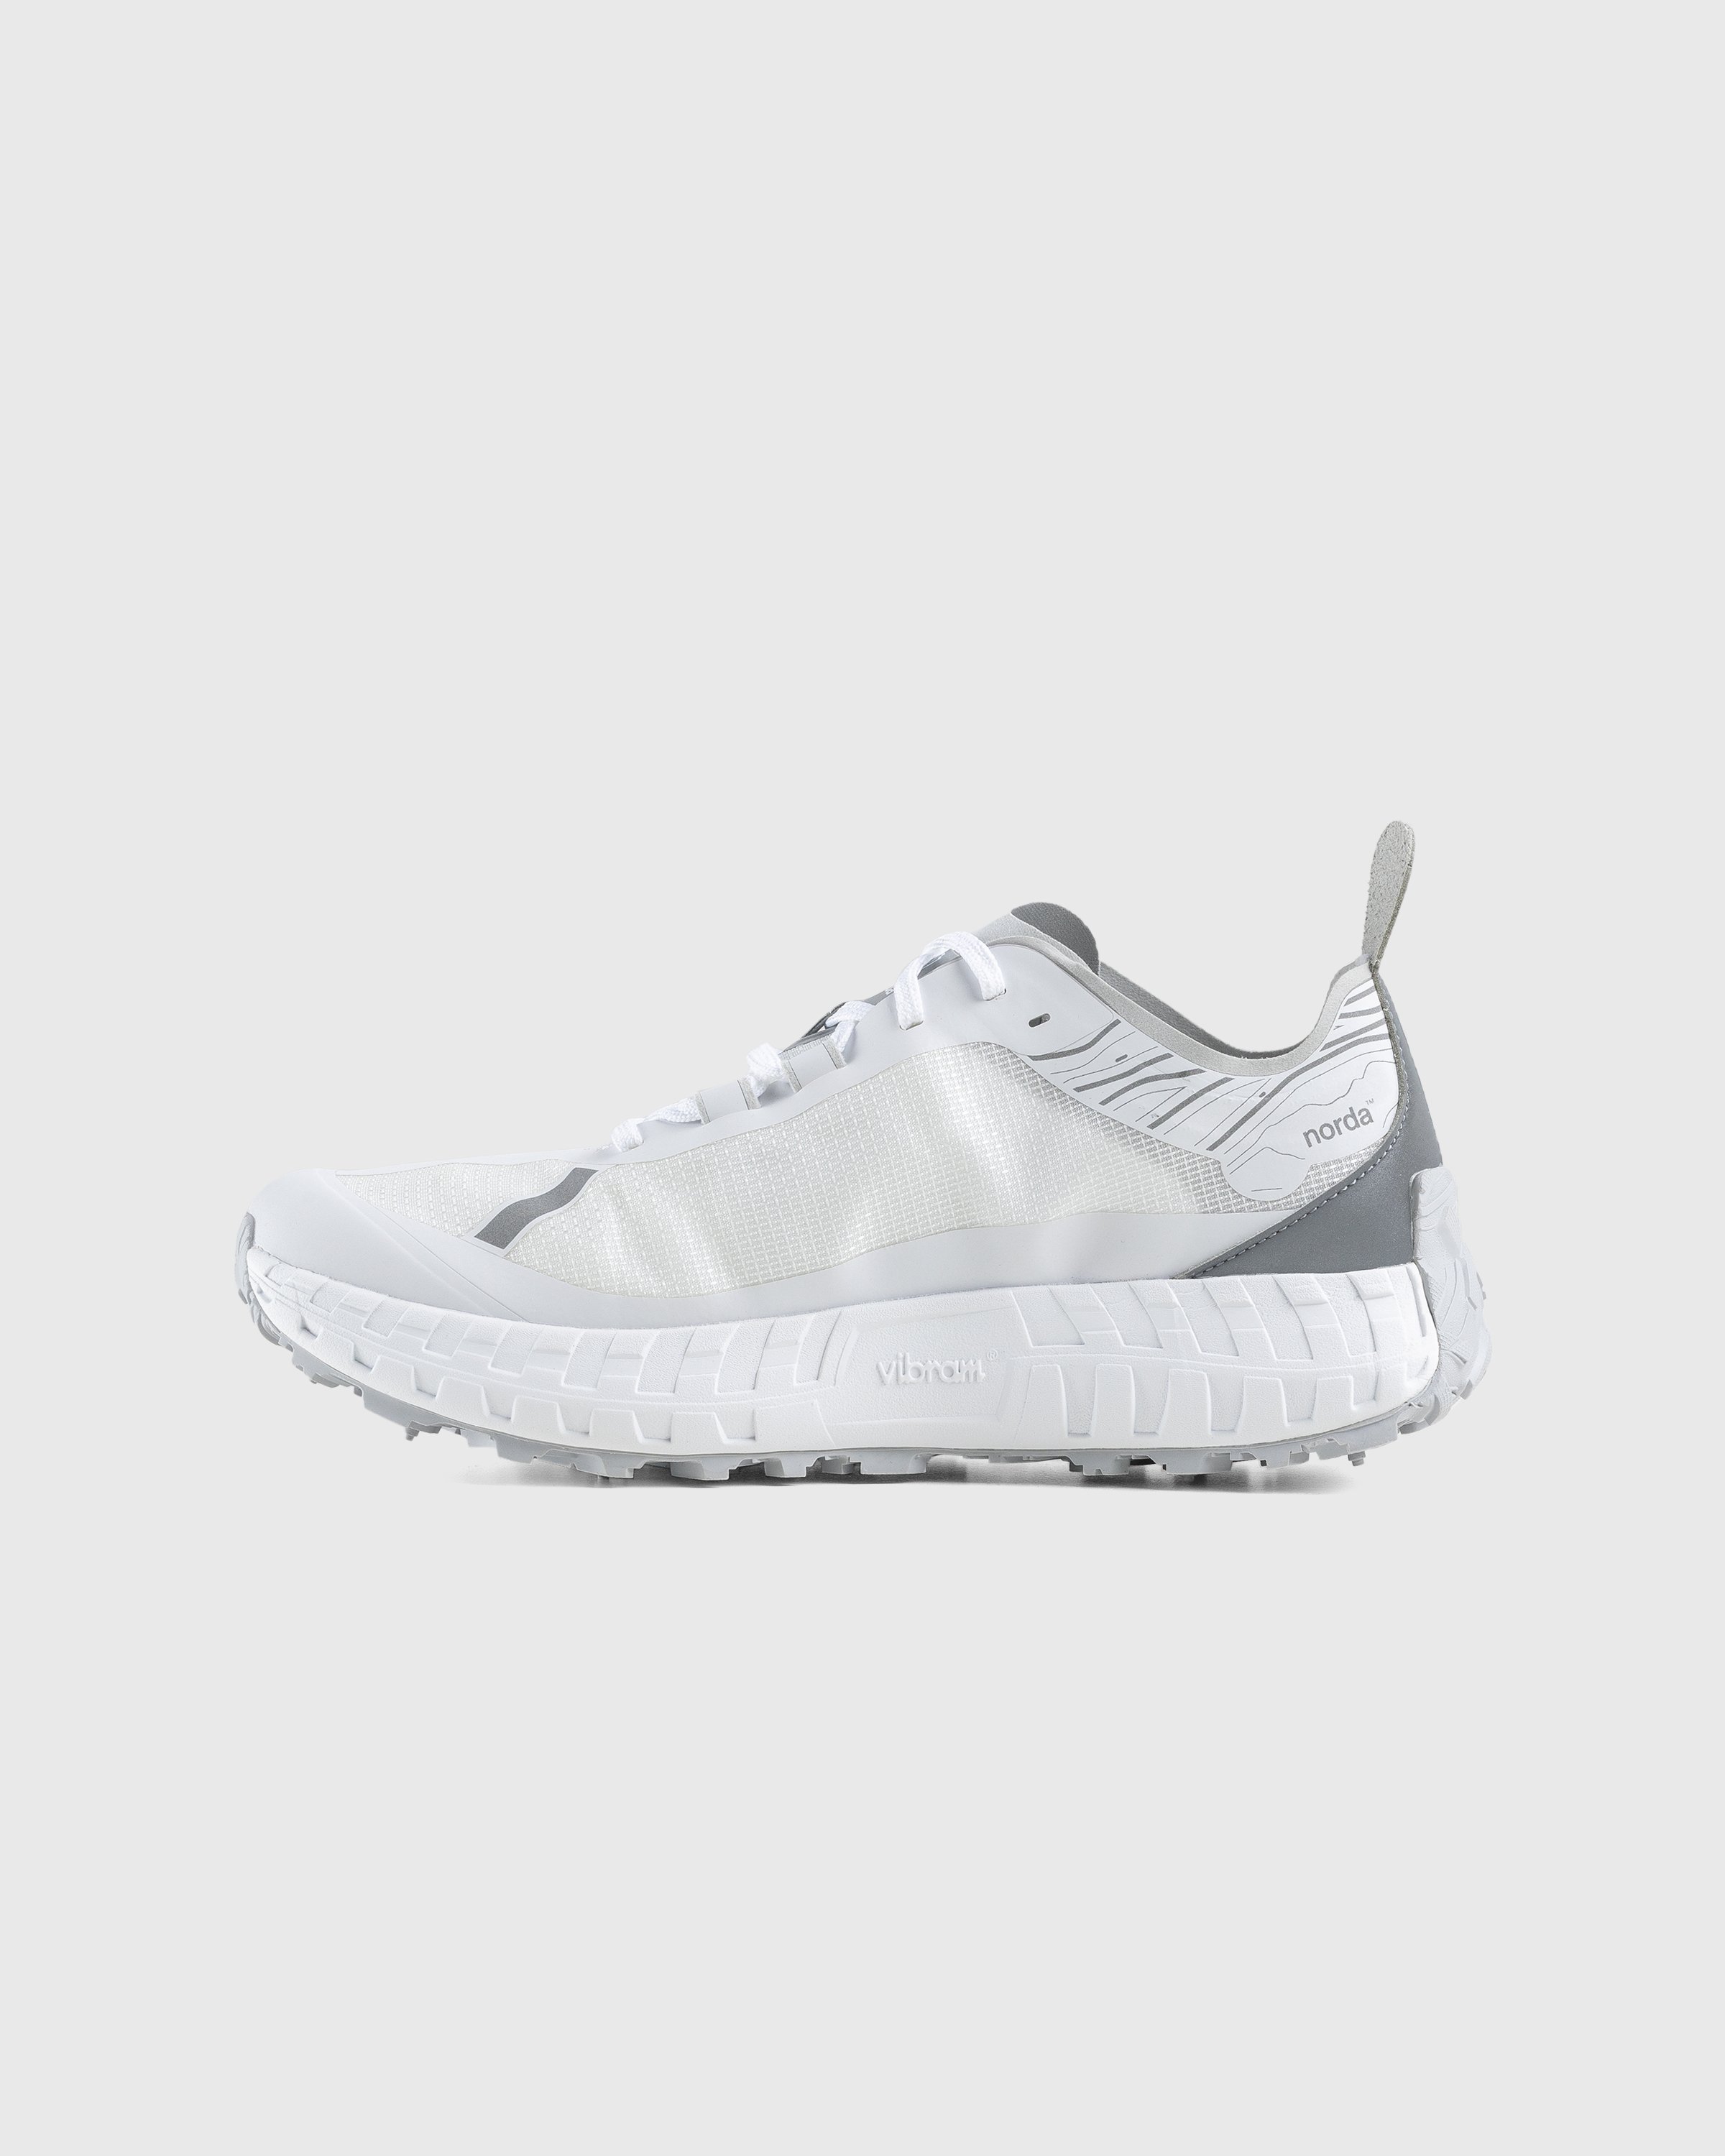 Norda - 001 W White/Grey - Footwear - White - Image 2